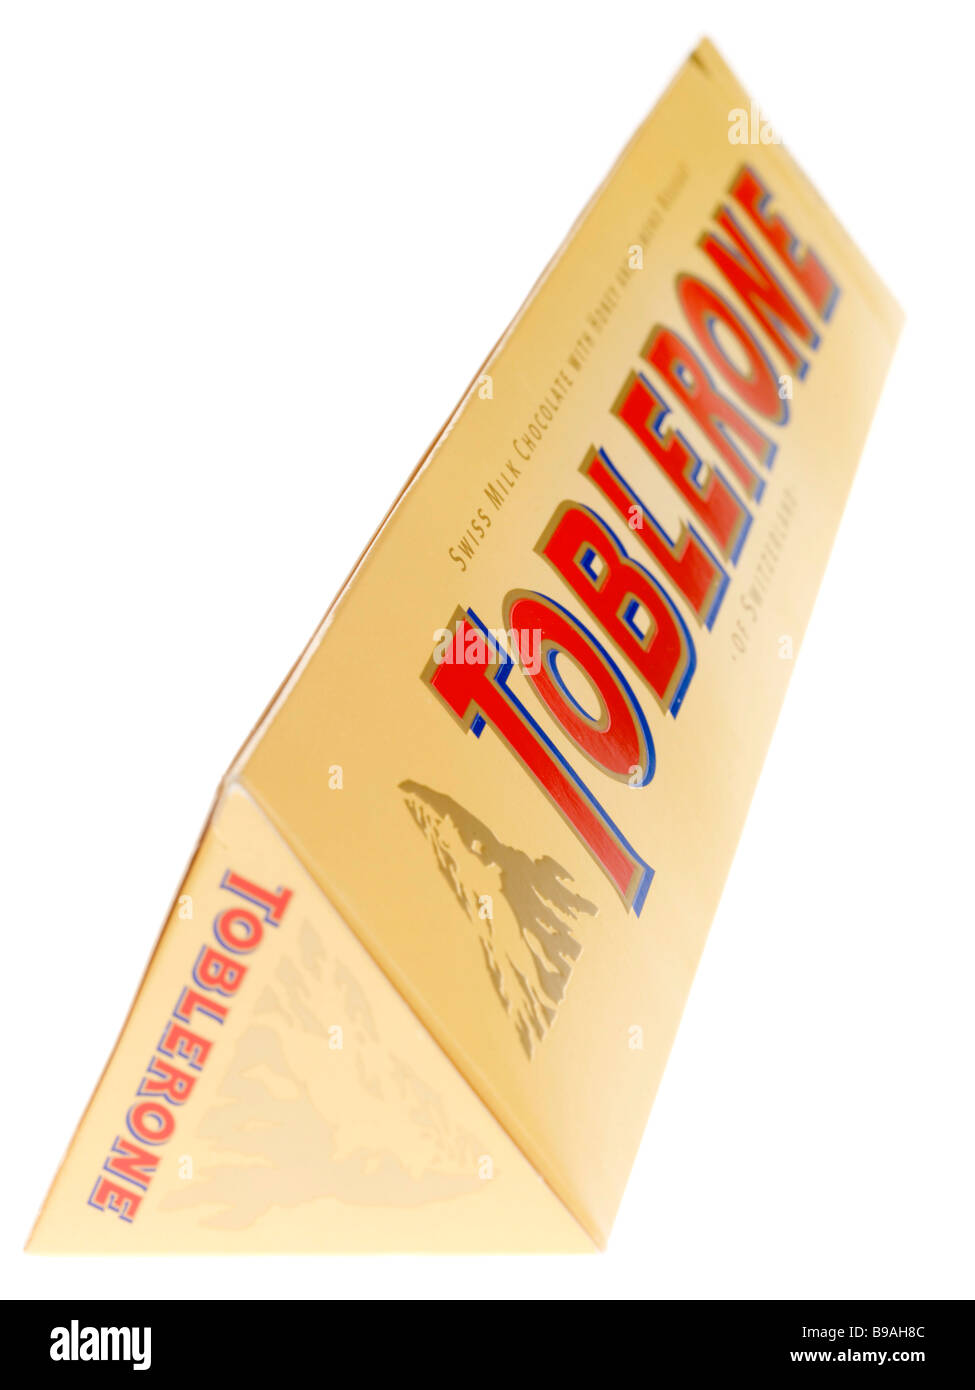 Bar de chocolat au lait Toblerone Blanc Backgorund isolé contre un